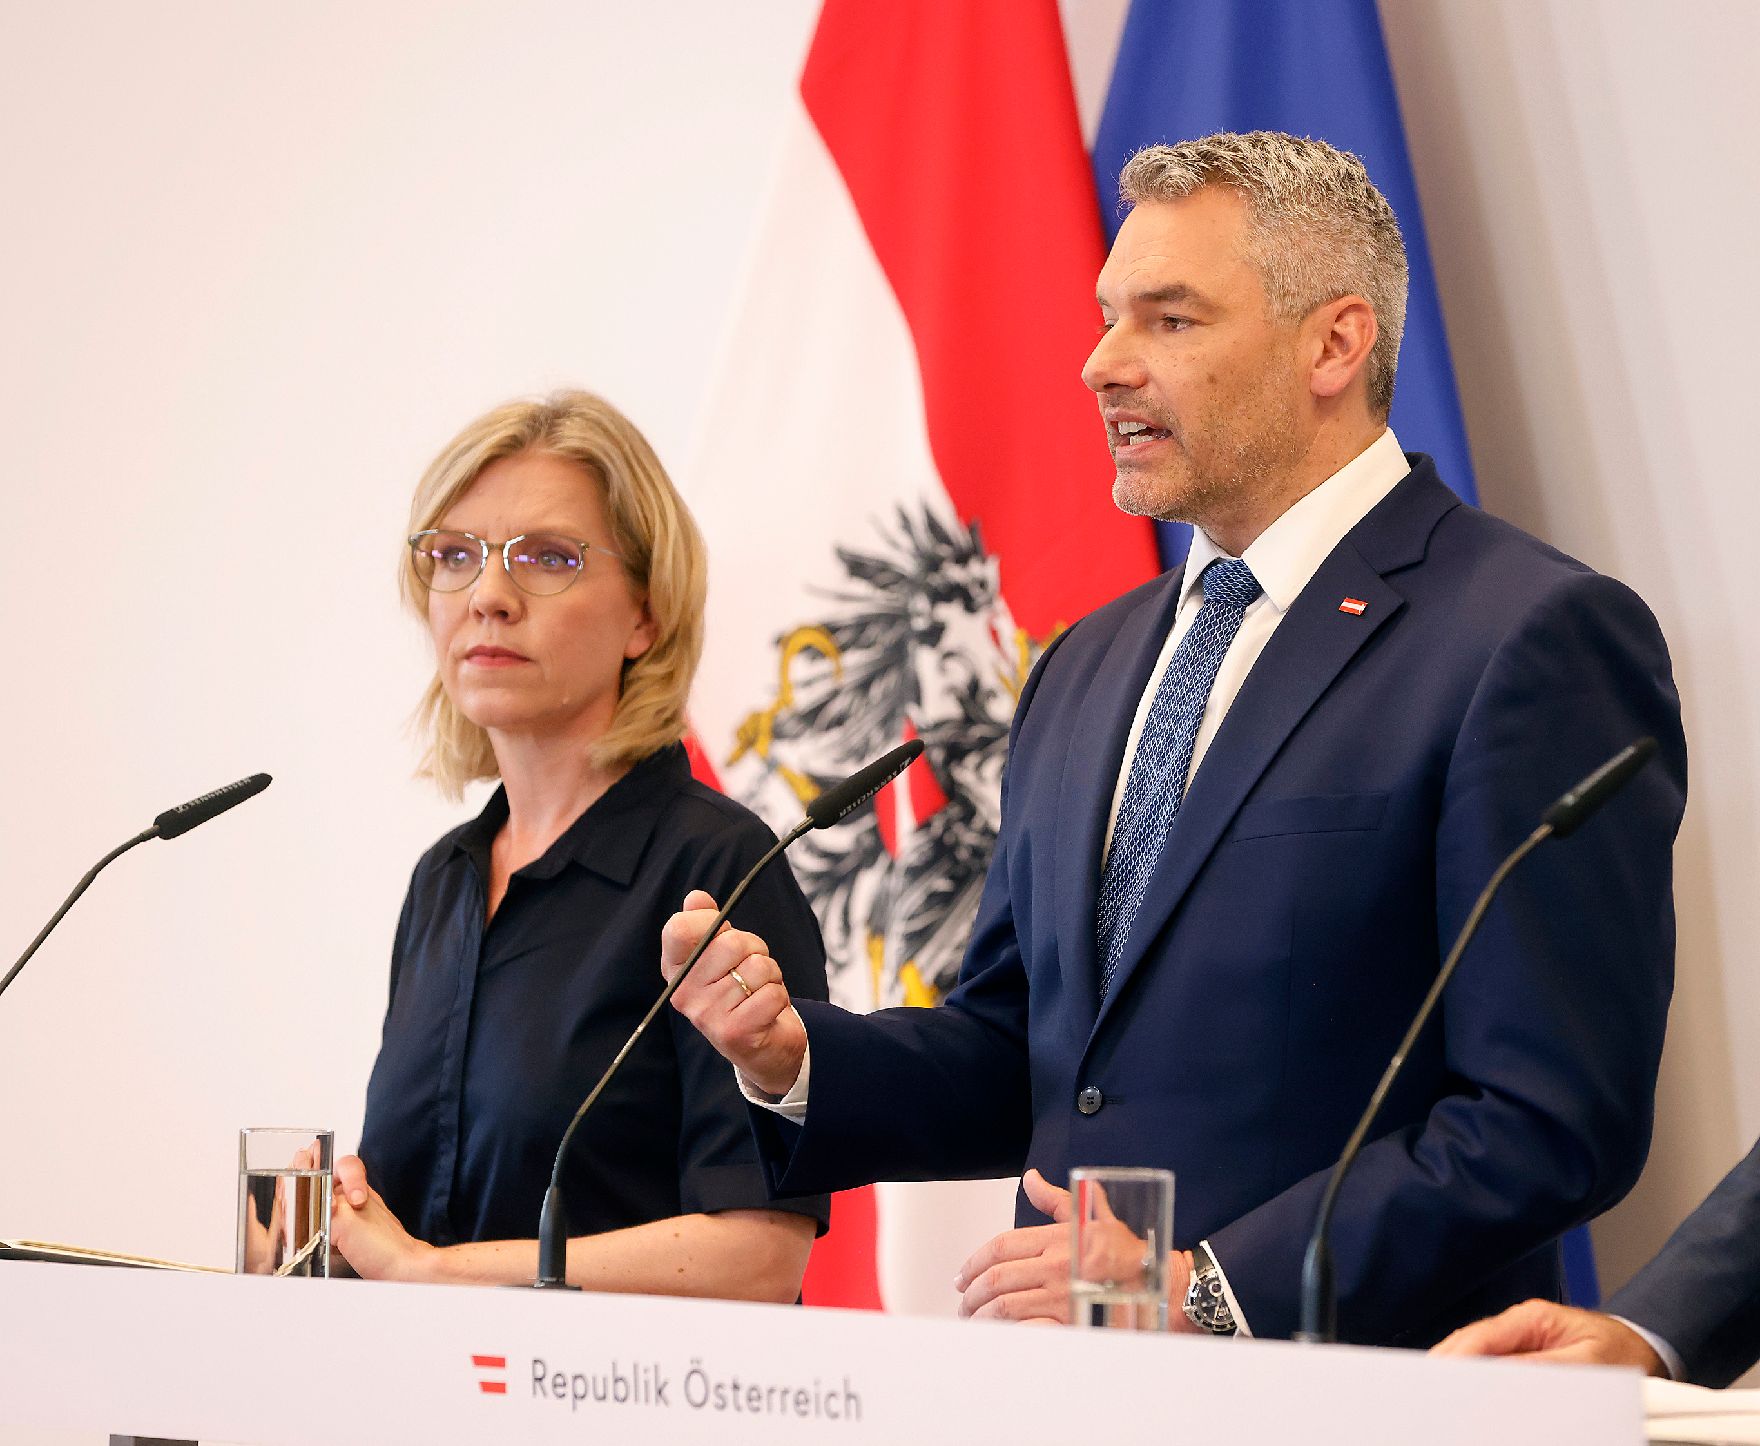 Am 27. Juli 2022 fand der Sommerministerrat der Österreichischen Bundesregierung statt. Im Bild Bundeskanzler Karl Nehammer (r.) und Bundesministerin Leonore Gewessler (l.) bei der Pressekonferenz.